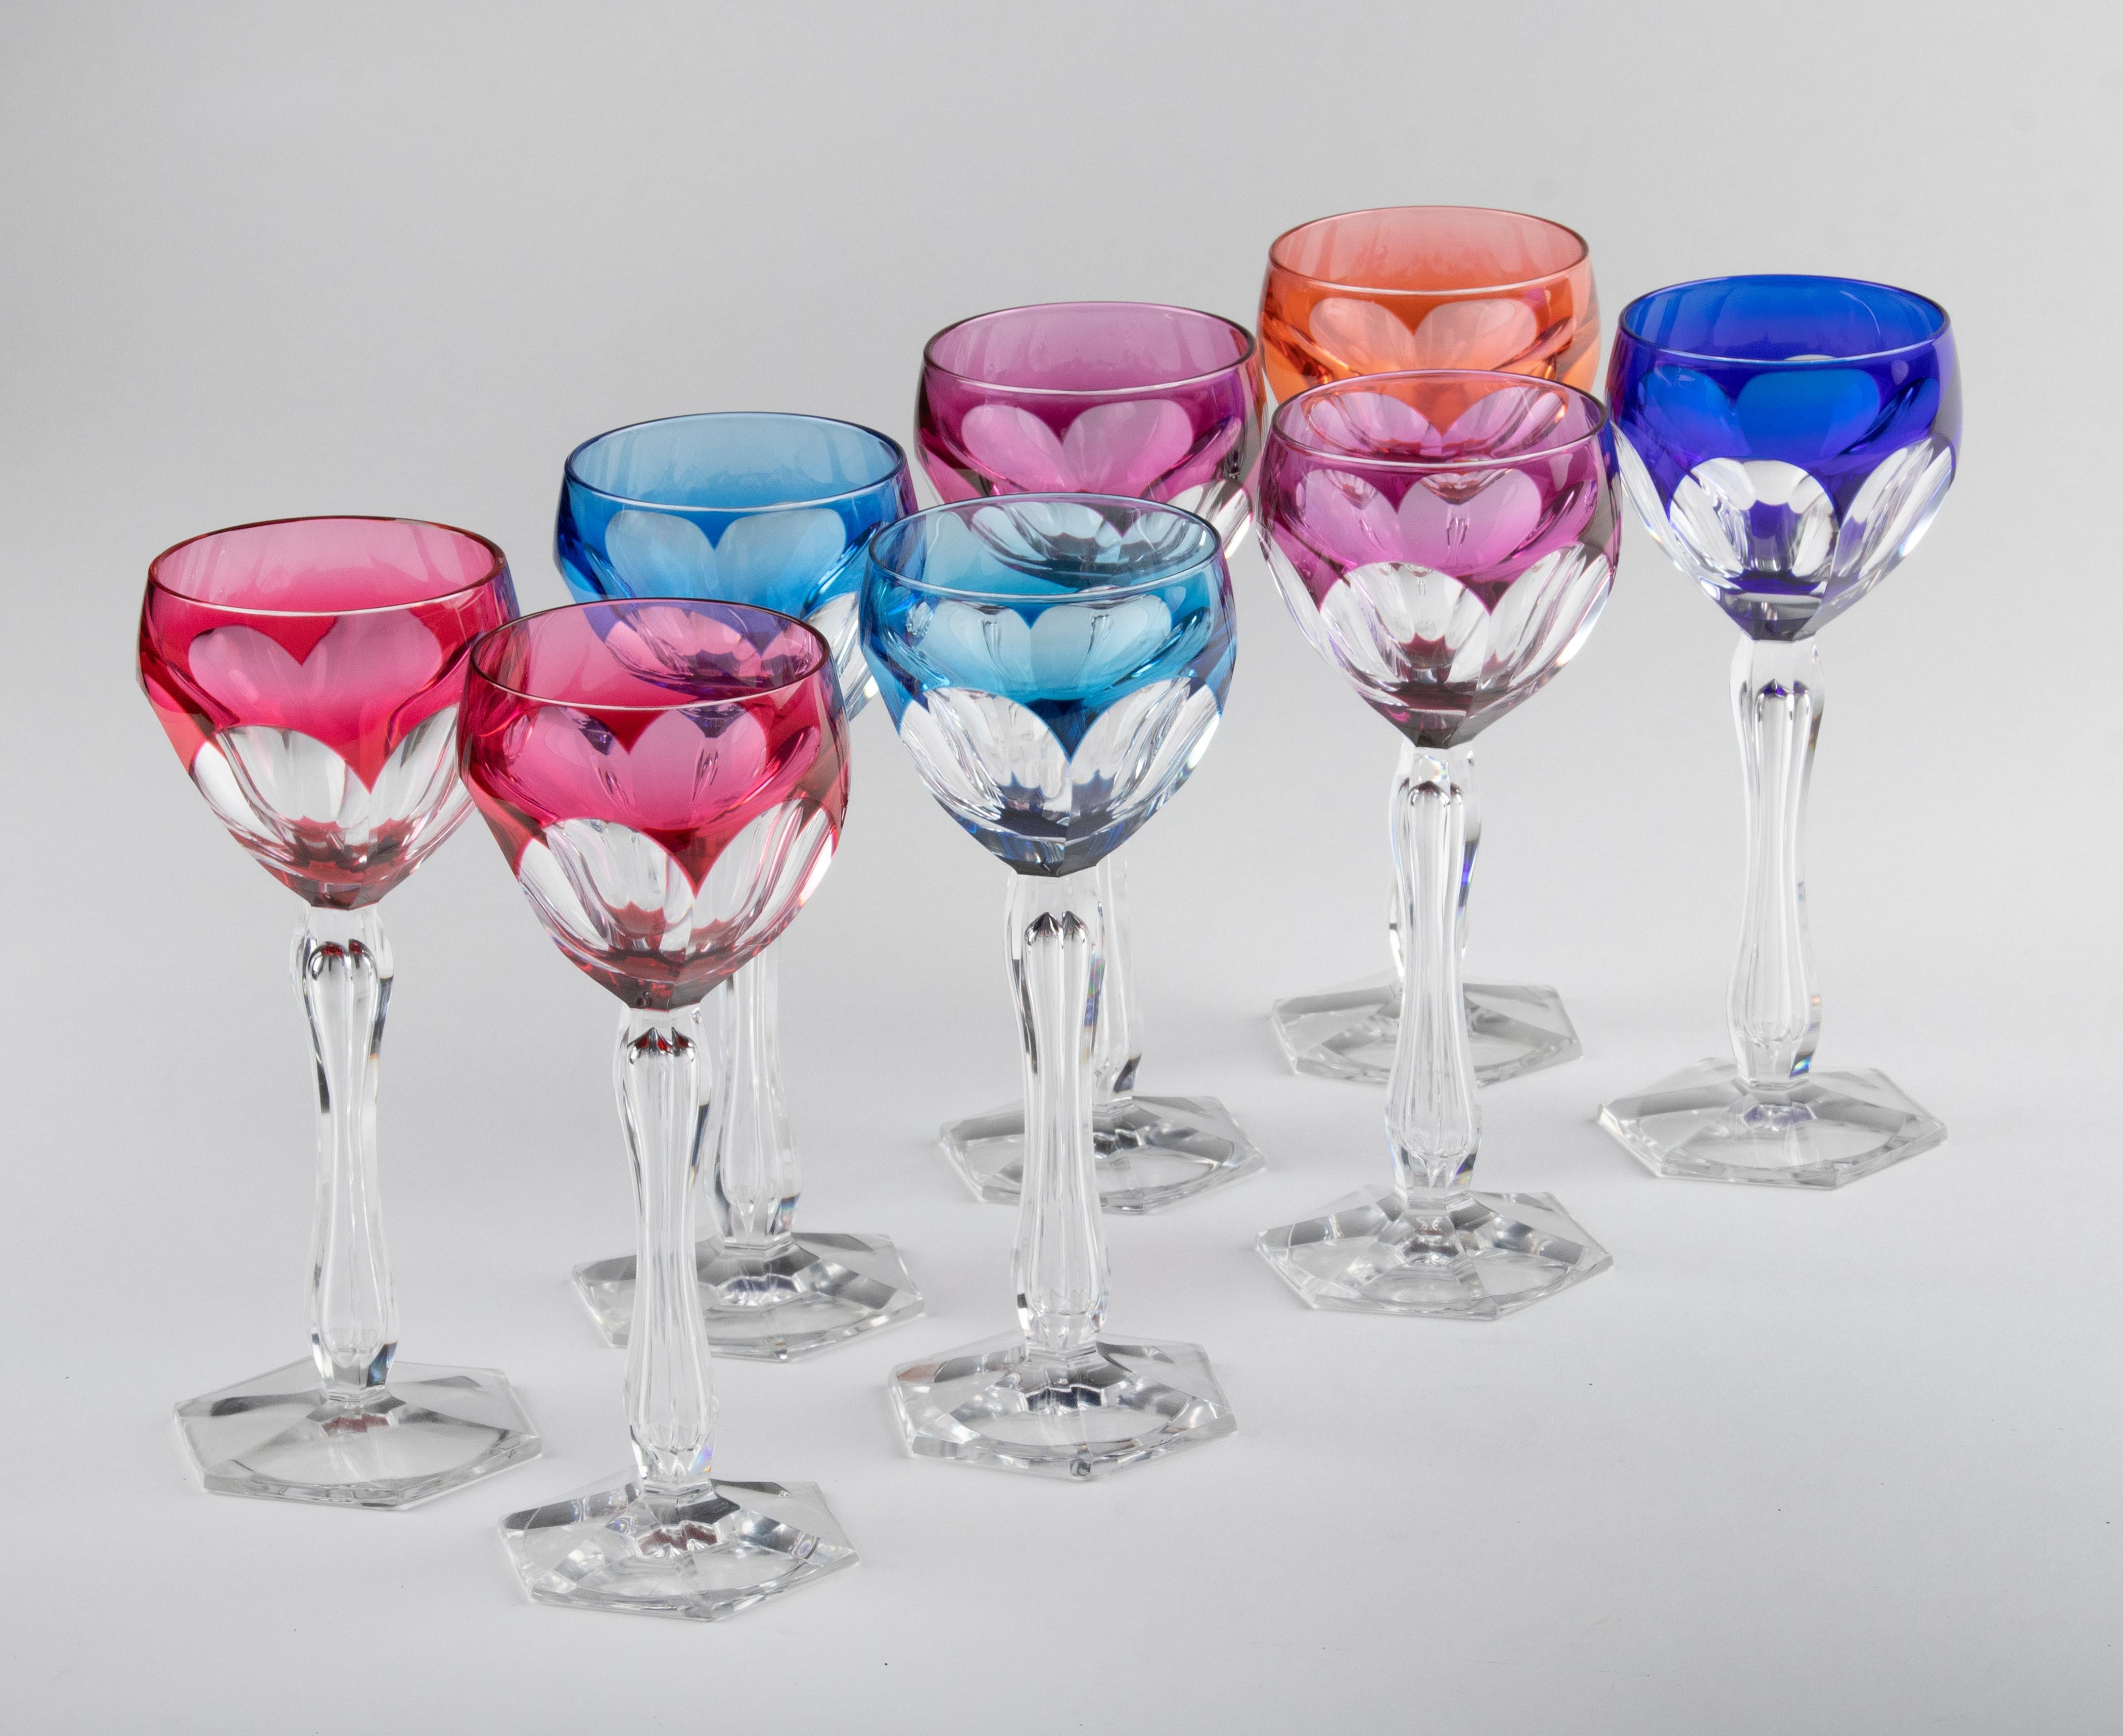 Wunderschönes Set aus 8 farbigen Kristallgläsern, hergestellt vom belgischen Hersteller Val Saint Lambert. Die Gläser haben eine tiefe, klare Farbe und schöne Schliffe. Die Innenseite des Stiels ist hübsch verziert. Die Gläser sind nicht